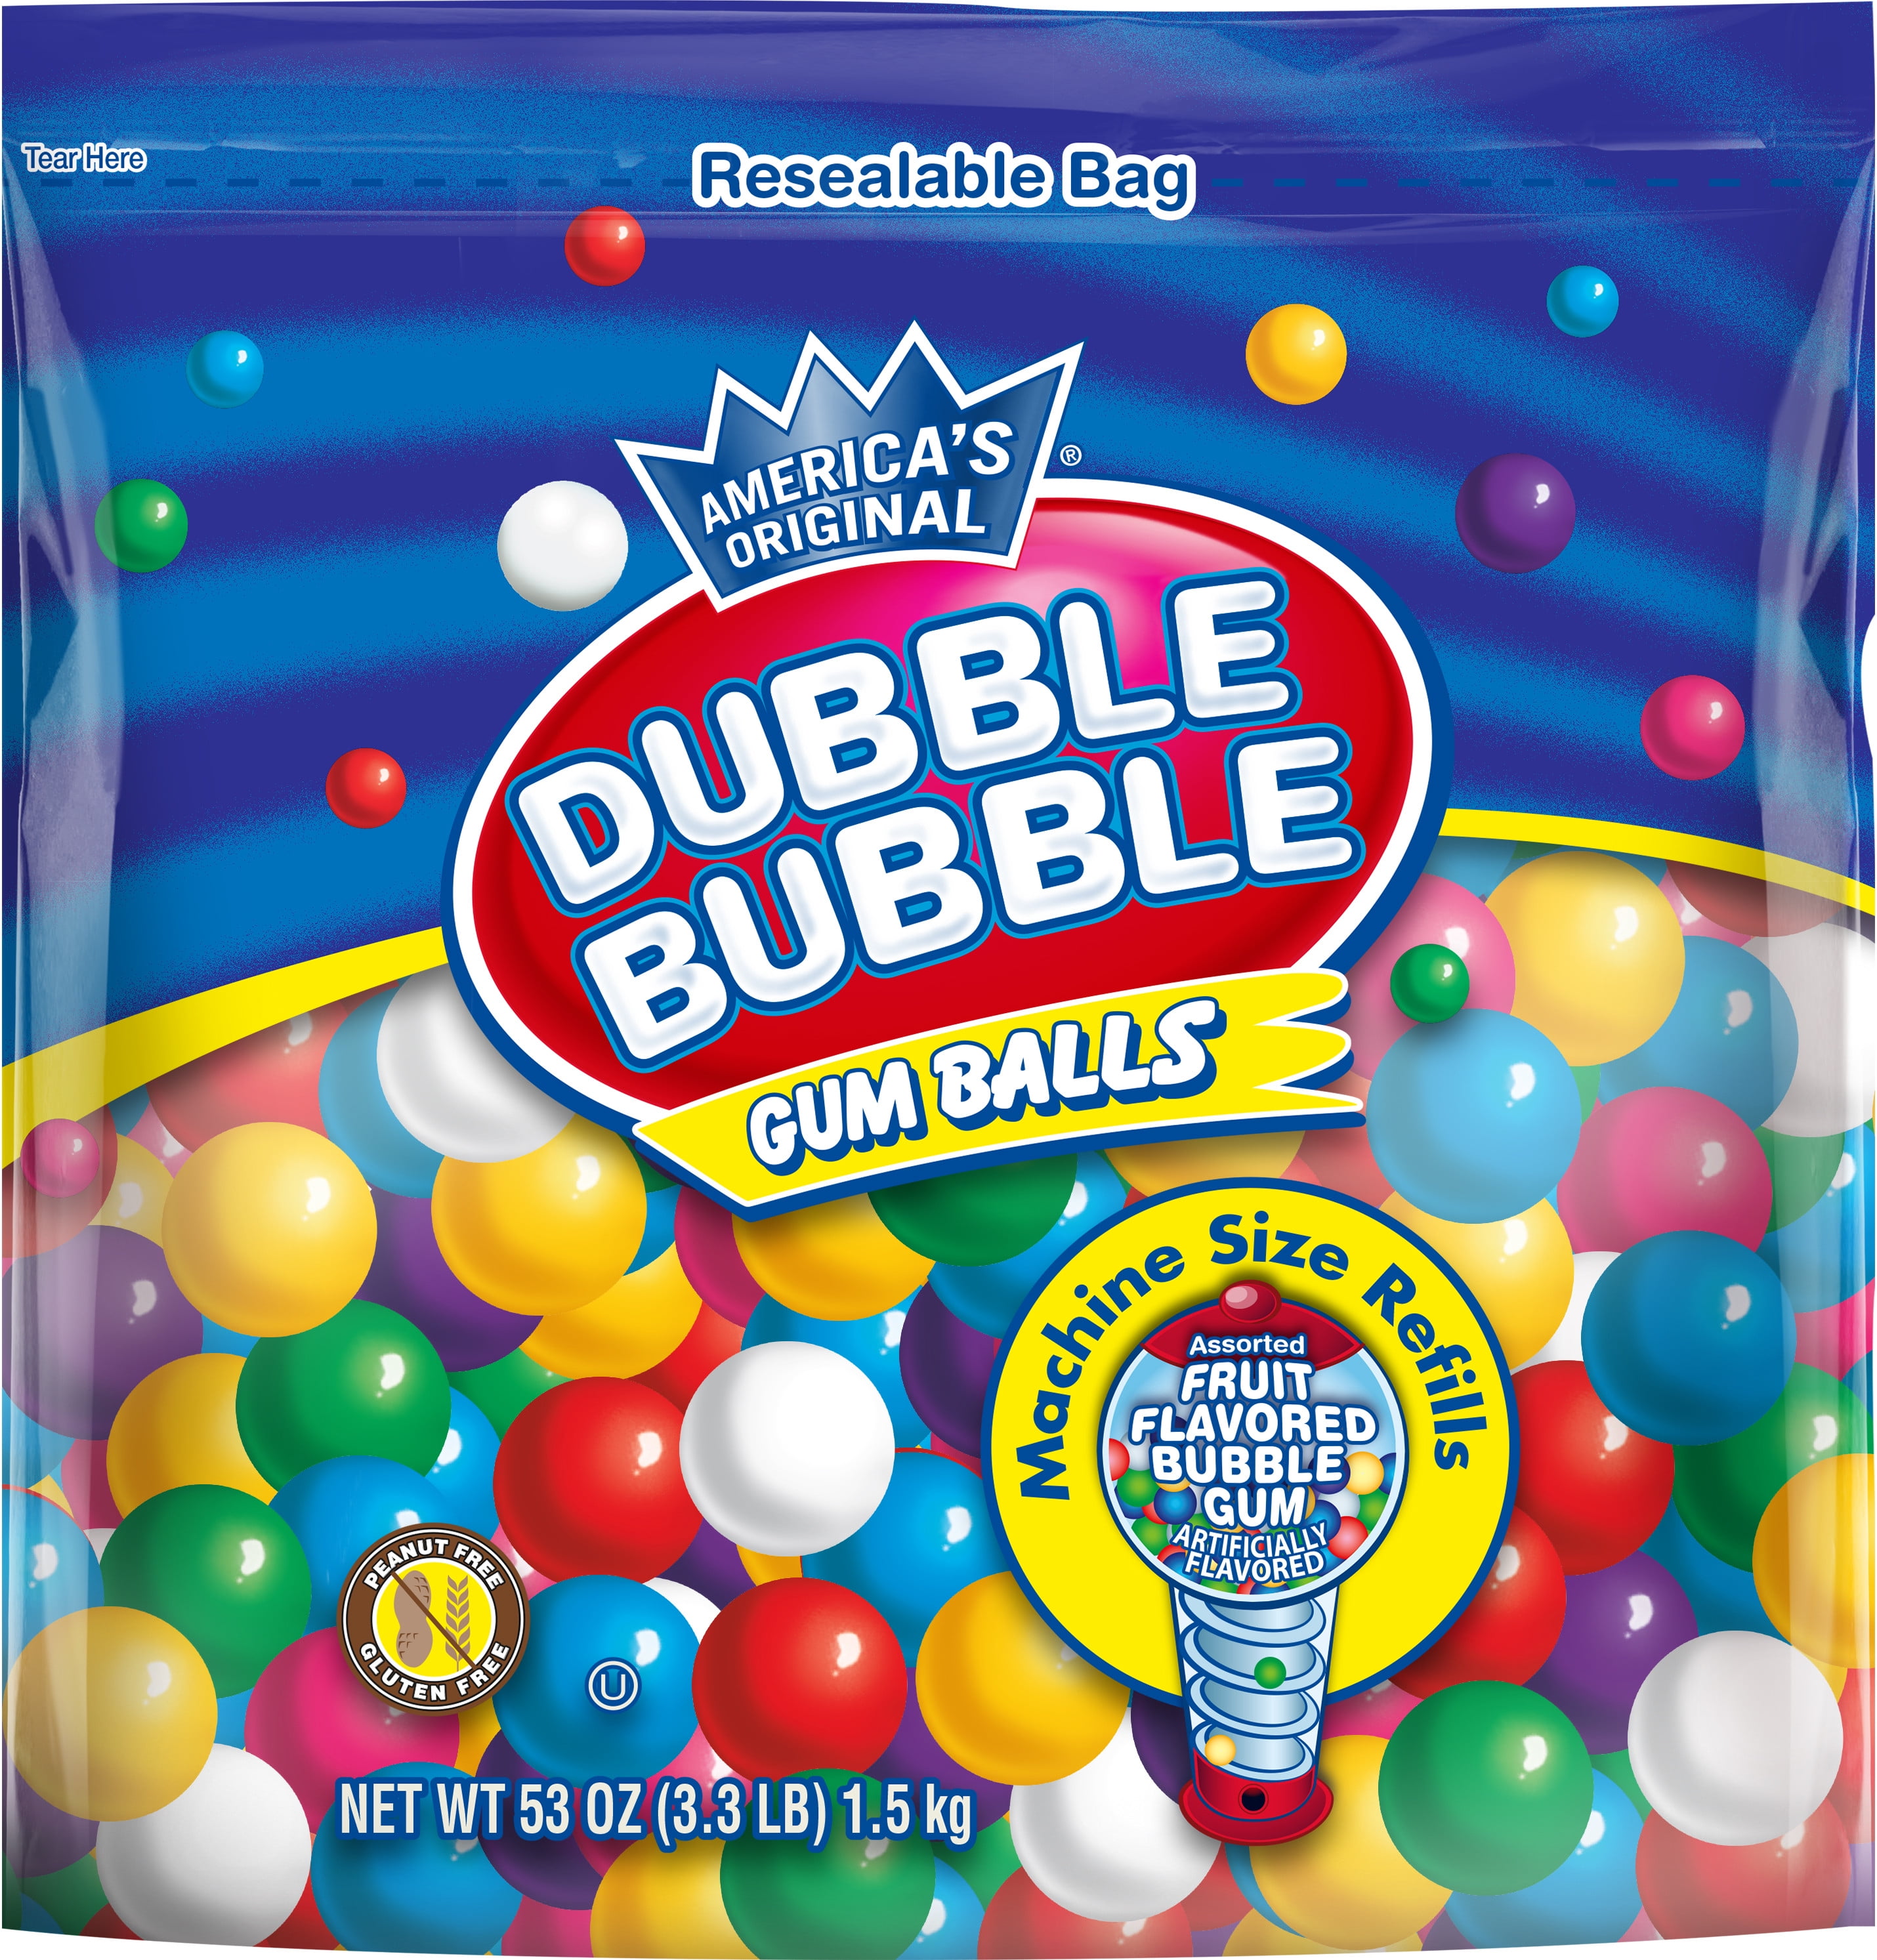 180 DUBBLE BUBBLE 1" GUMBALLS vending candy Bubblegum gum balls assorted flavors 